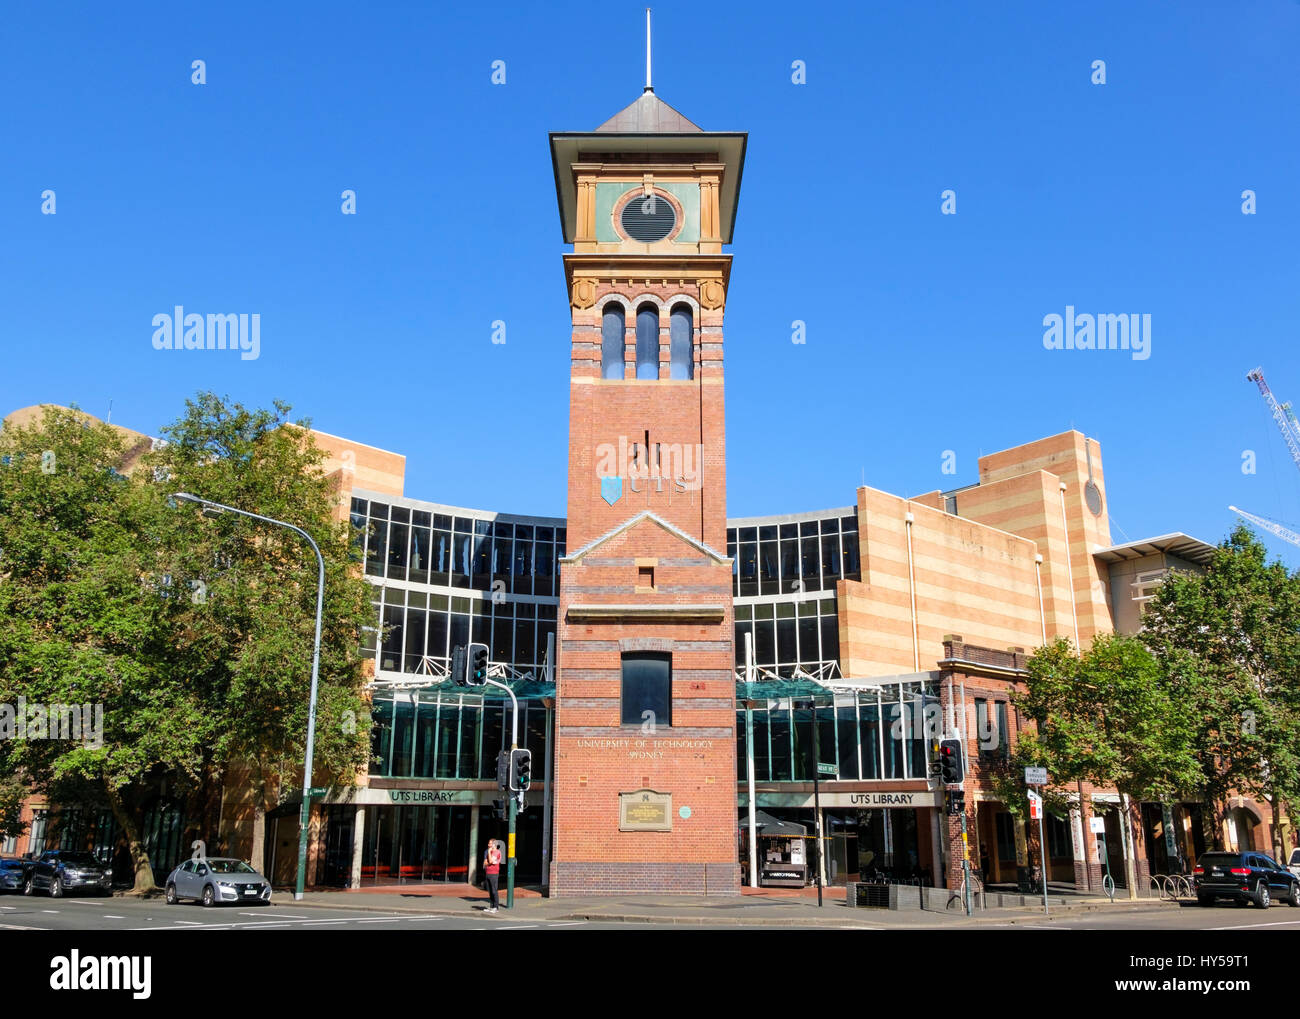 UTS (University of Technology di Sydney) Haymarket Campus - Biblioteca universitaria e la torre dell orologio. Quay Street, Ultimo. Università australiana architettura Foto Stock